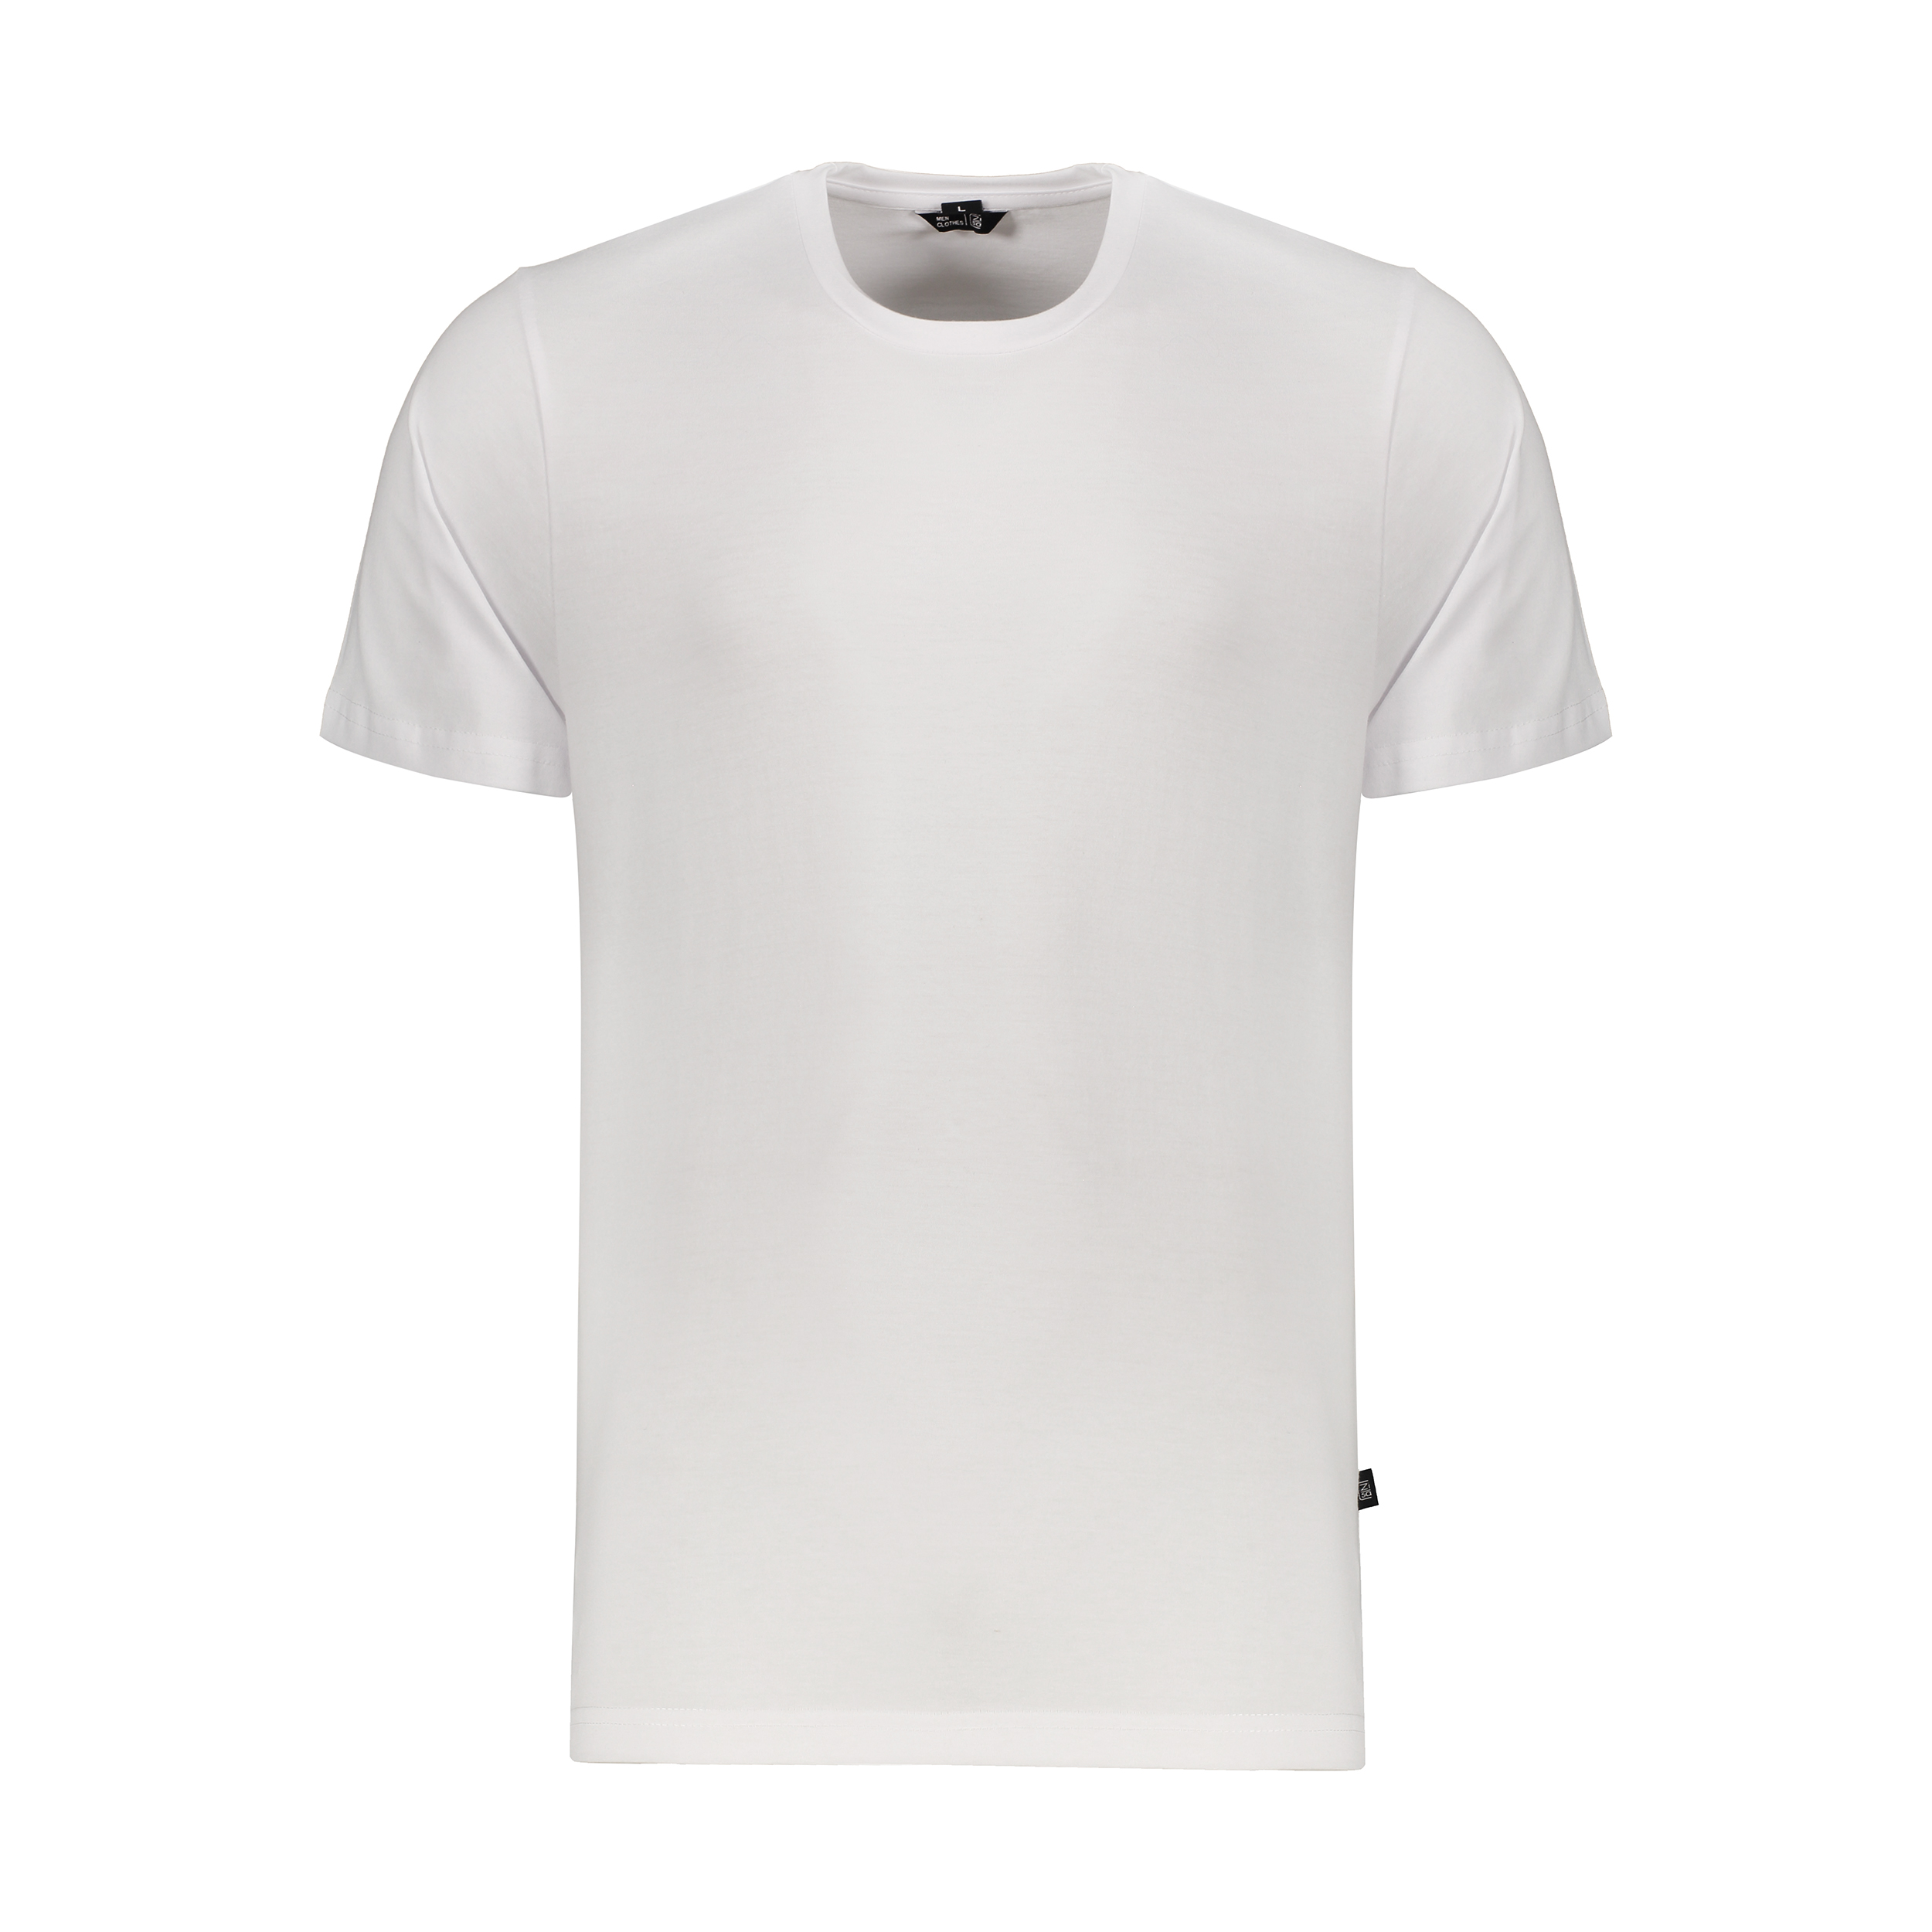 تی شرت آستین کوتاه مردانه زی سا مدل 153159701